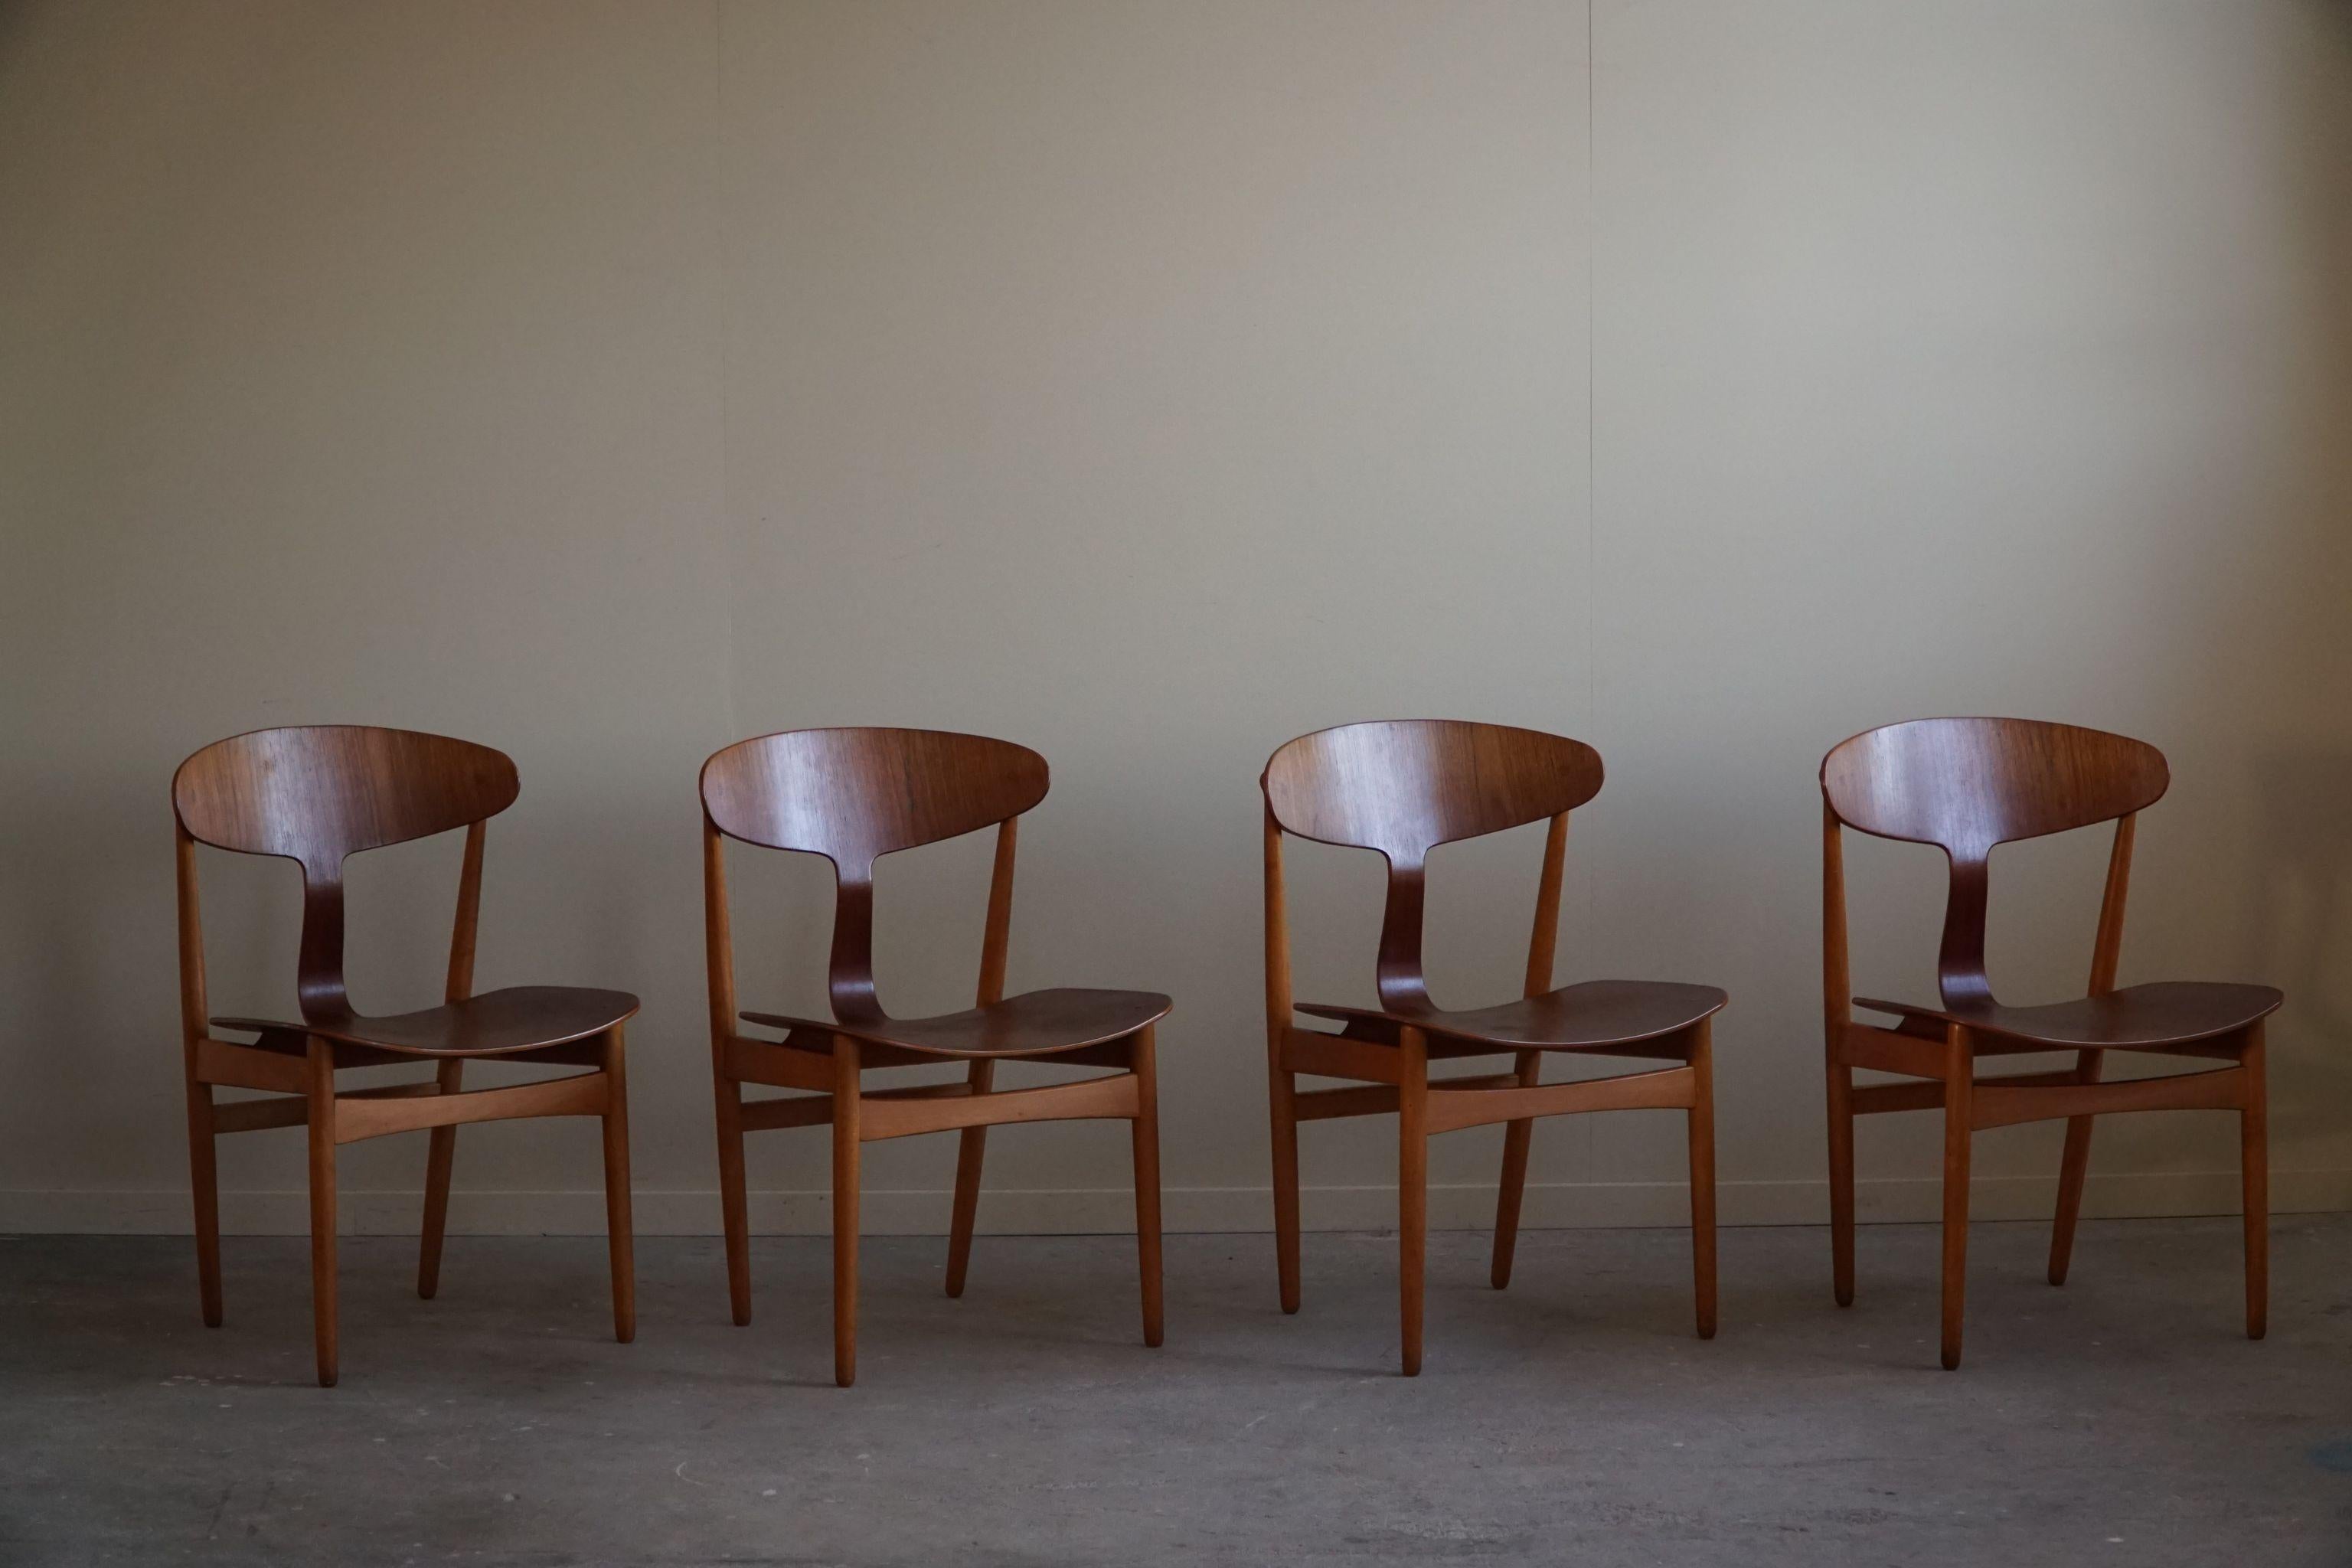 Dieses seltene Set von vier Esszimmerstühlen, bekannt als Modell 46, wurde 1954 von den dänischen Designern Ejner Larsen und Aksel Bender Madsen für die Brande Møbelfabrik in Dänemark entworfen. Diese Stühle verkörpern die Essenz des modernen